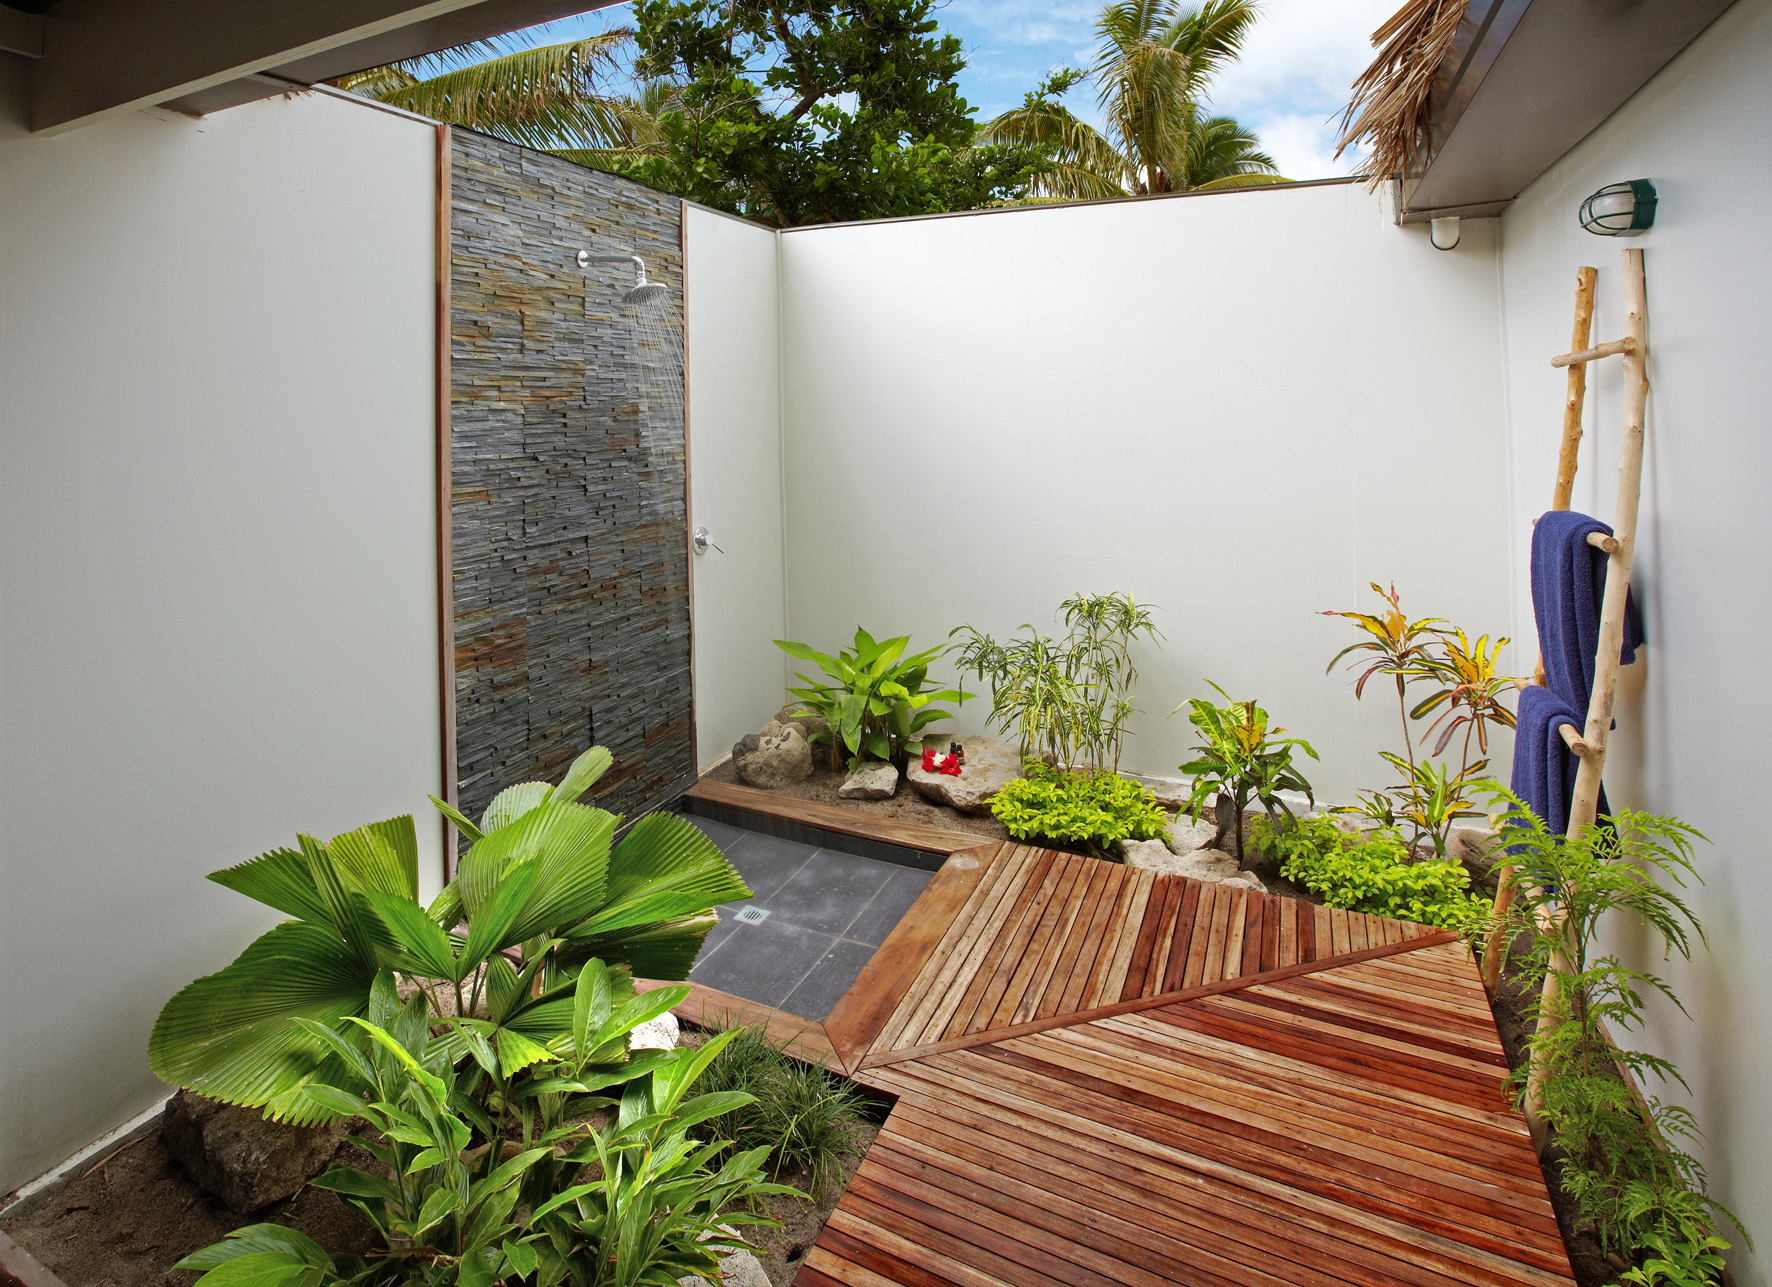 Тропические души. Летний душ в балийском стиле. Тропический душ на даче. Душ в тропическом стиле. Летний душ в тропическом стиле.